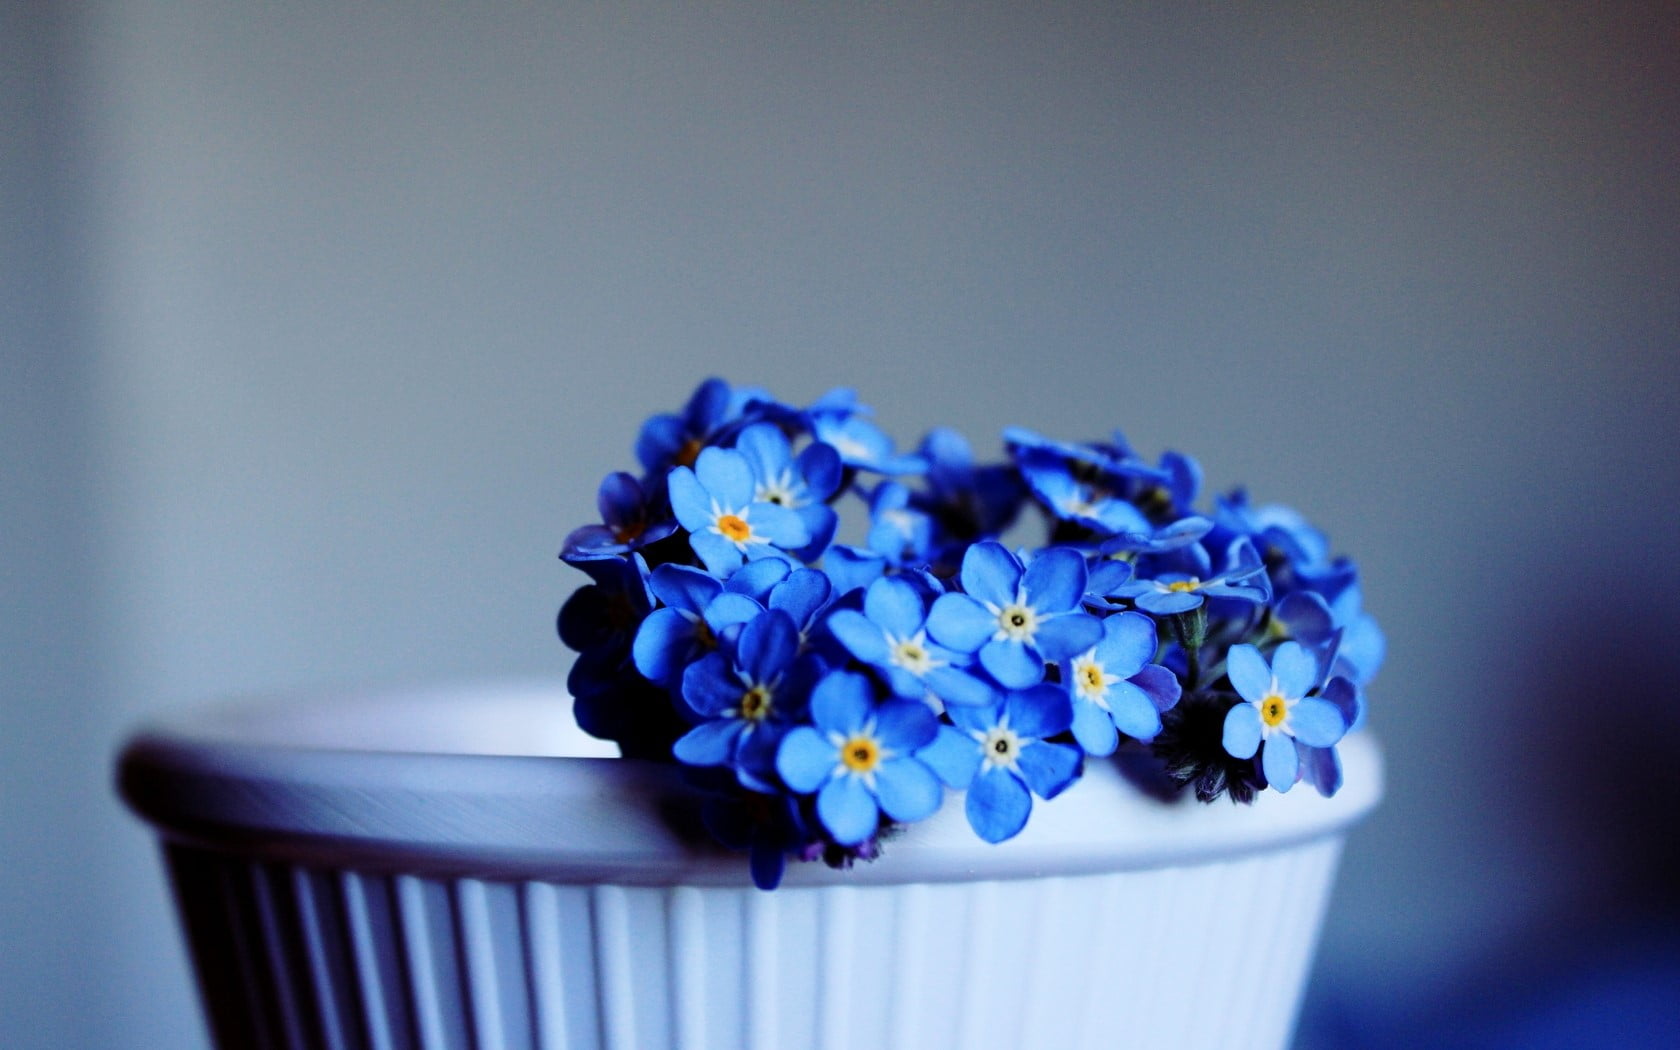 Me-nots, Flowers, Pot, Close-up, blue, indoors, flowering plant